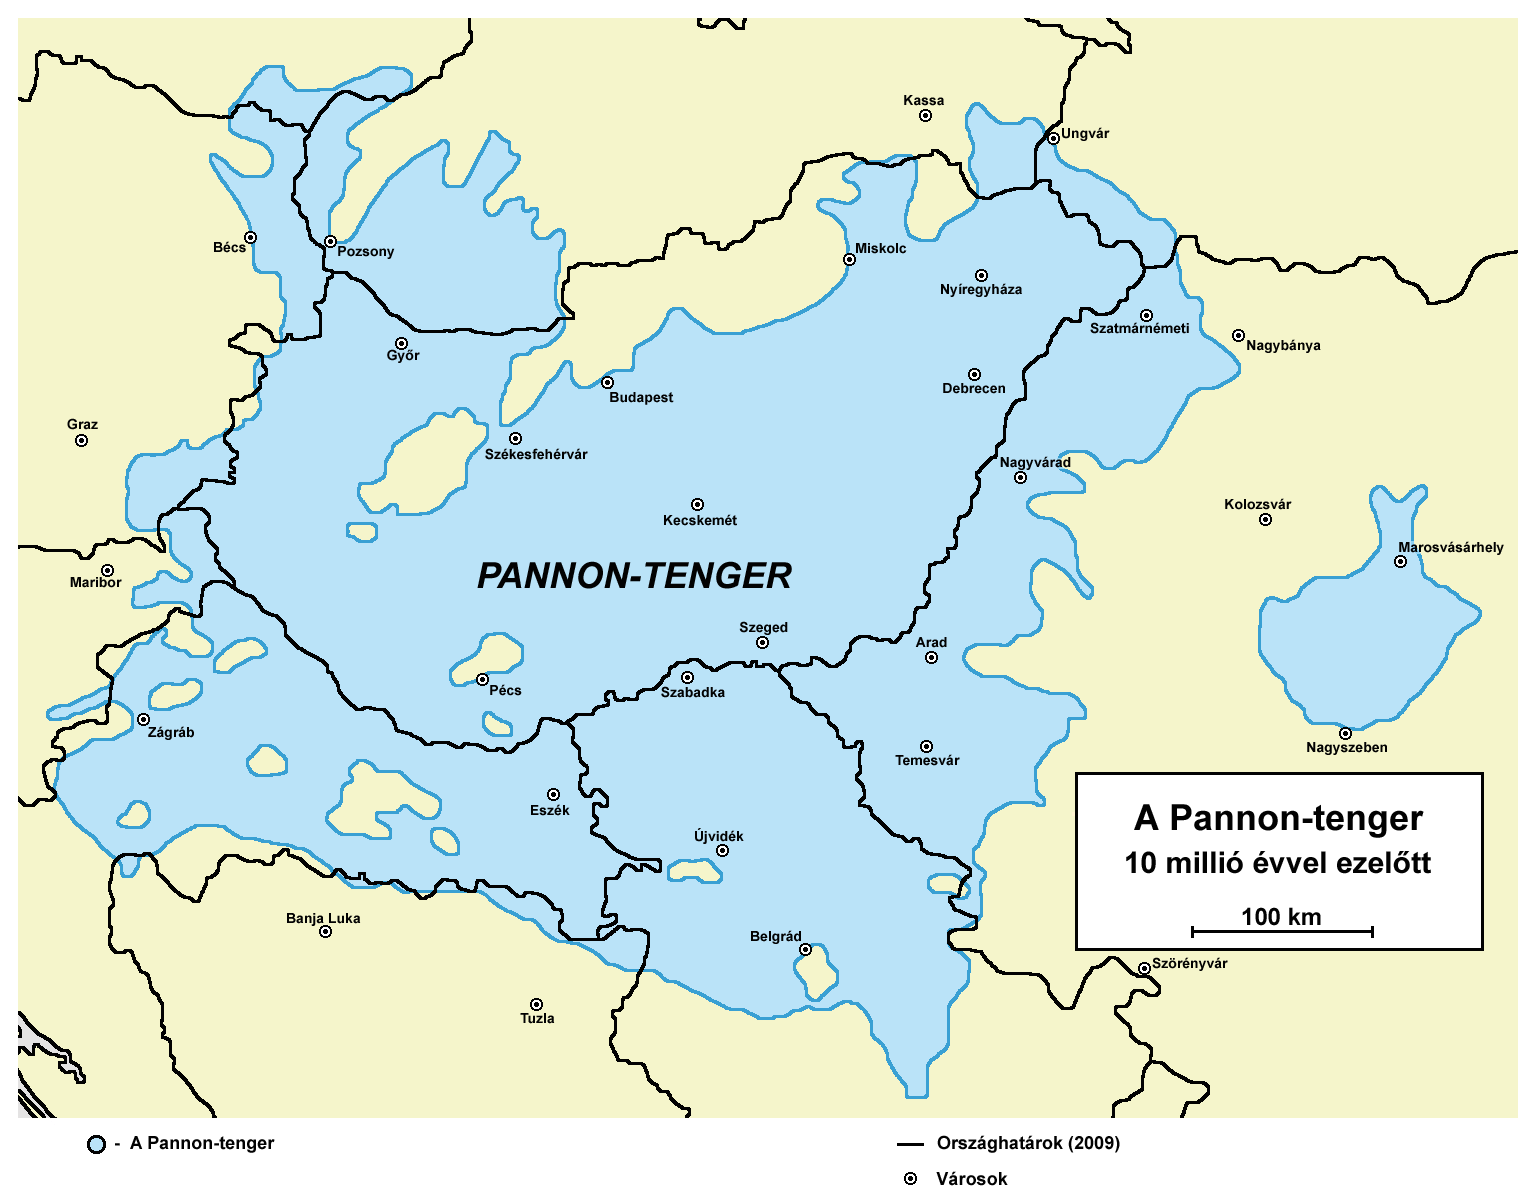 A Pannon-tenger 10 millió évvel ezelőtt